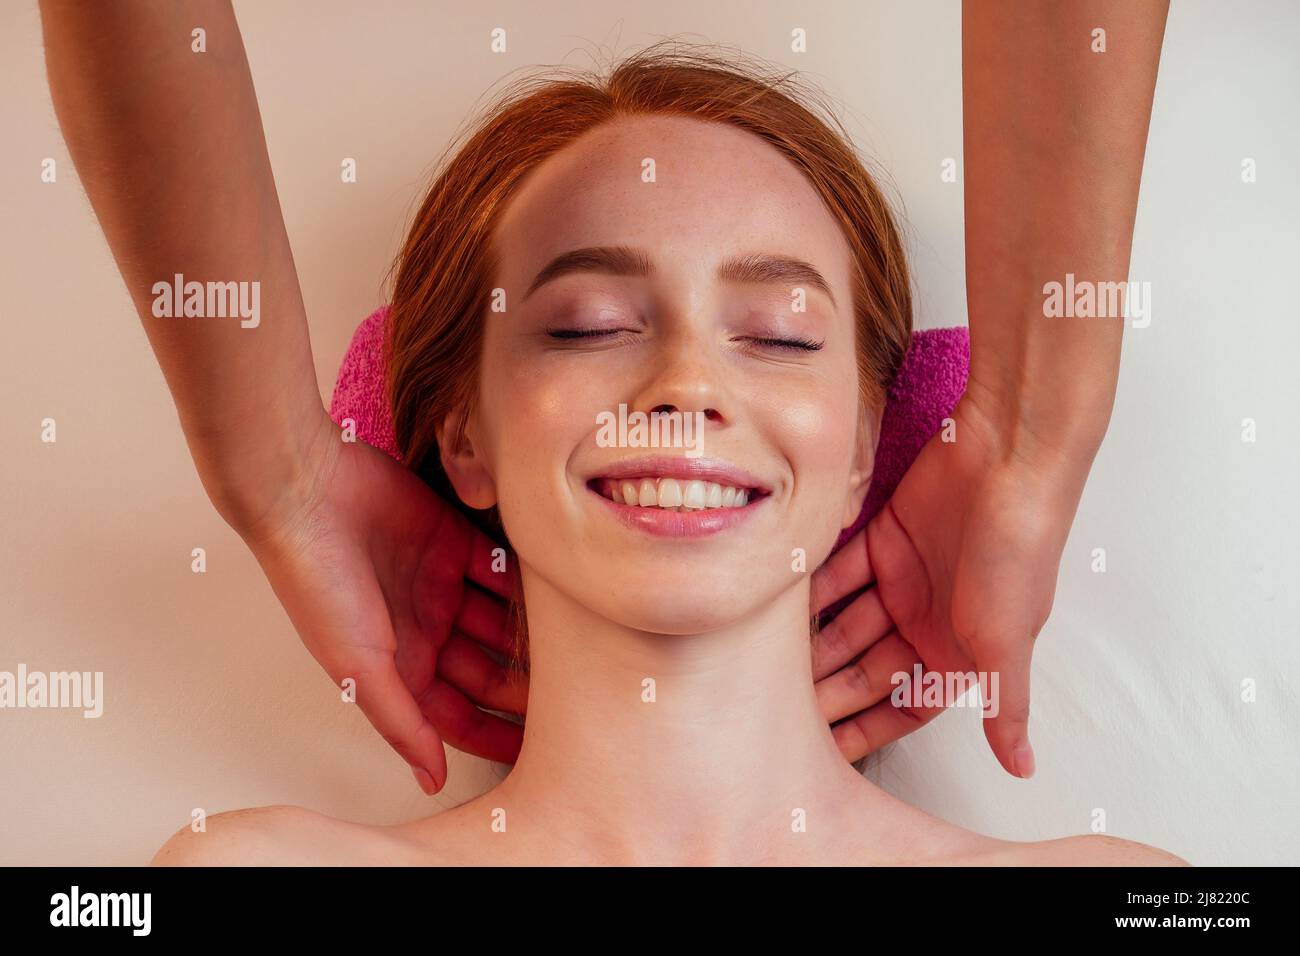 au spa, une femme au gingembre aux cheveux rouges reçoit un massage du visage Banque D'Images